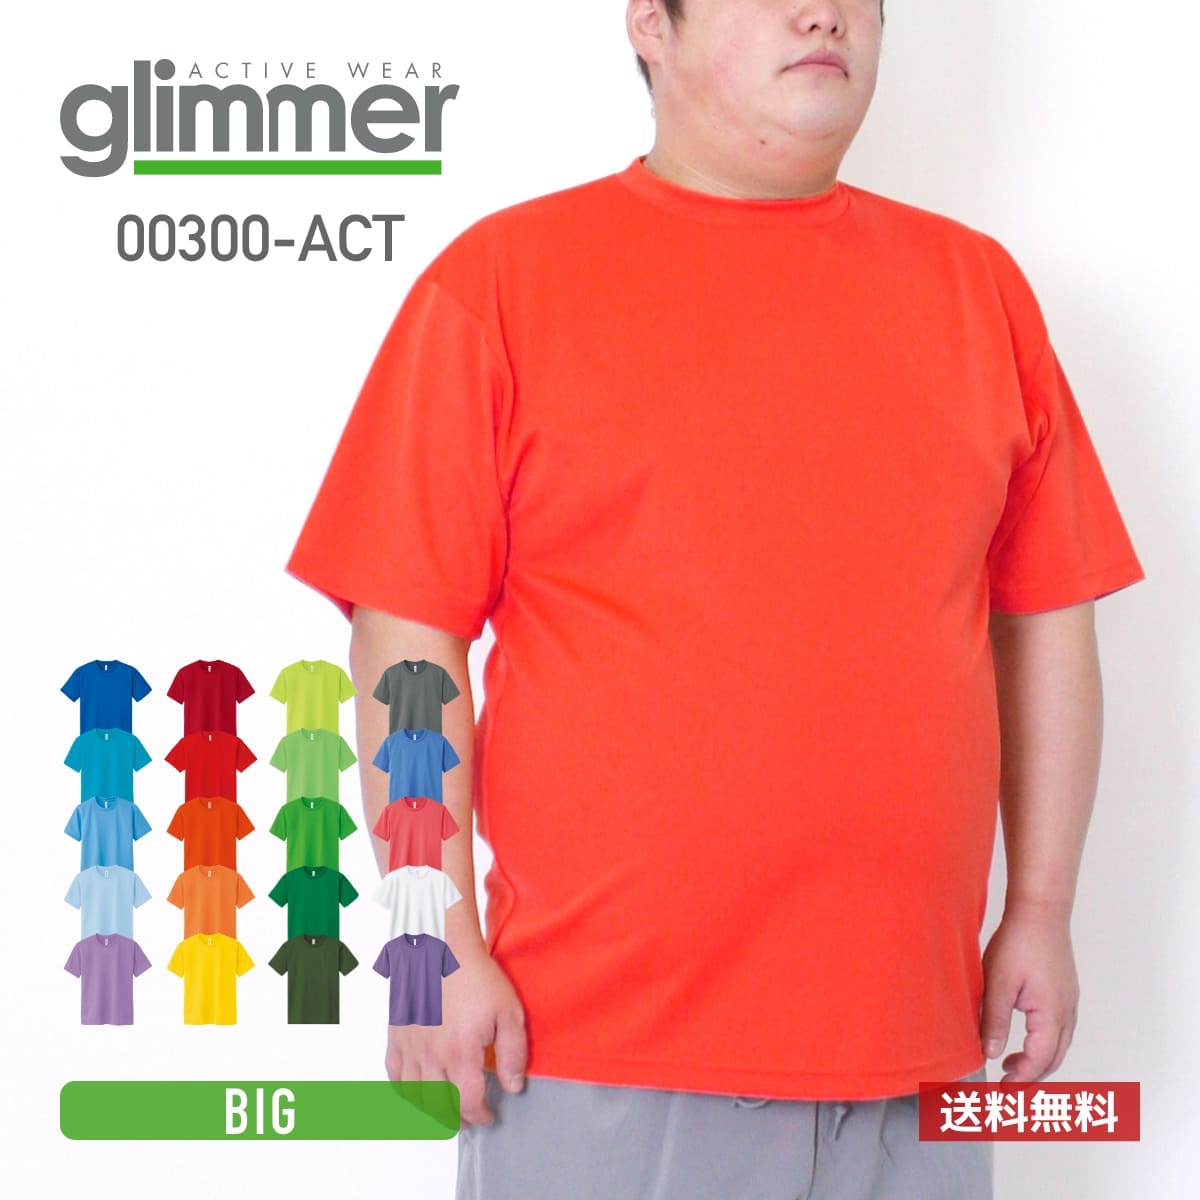 tシャツ メンズ 速乾 tシャツ 半袖 glimmer グリマー 4.4オンス ドライ Tシャツ 00300-ACT 送料無料 大きいサイズ 男…